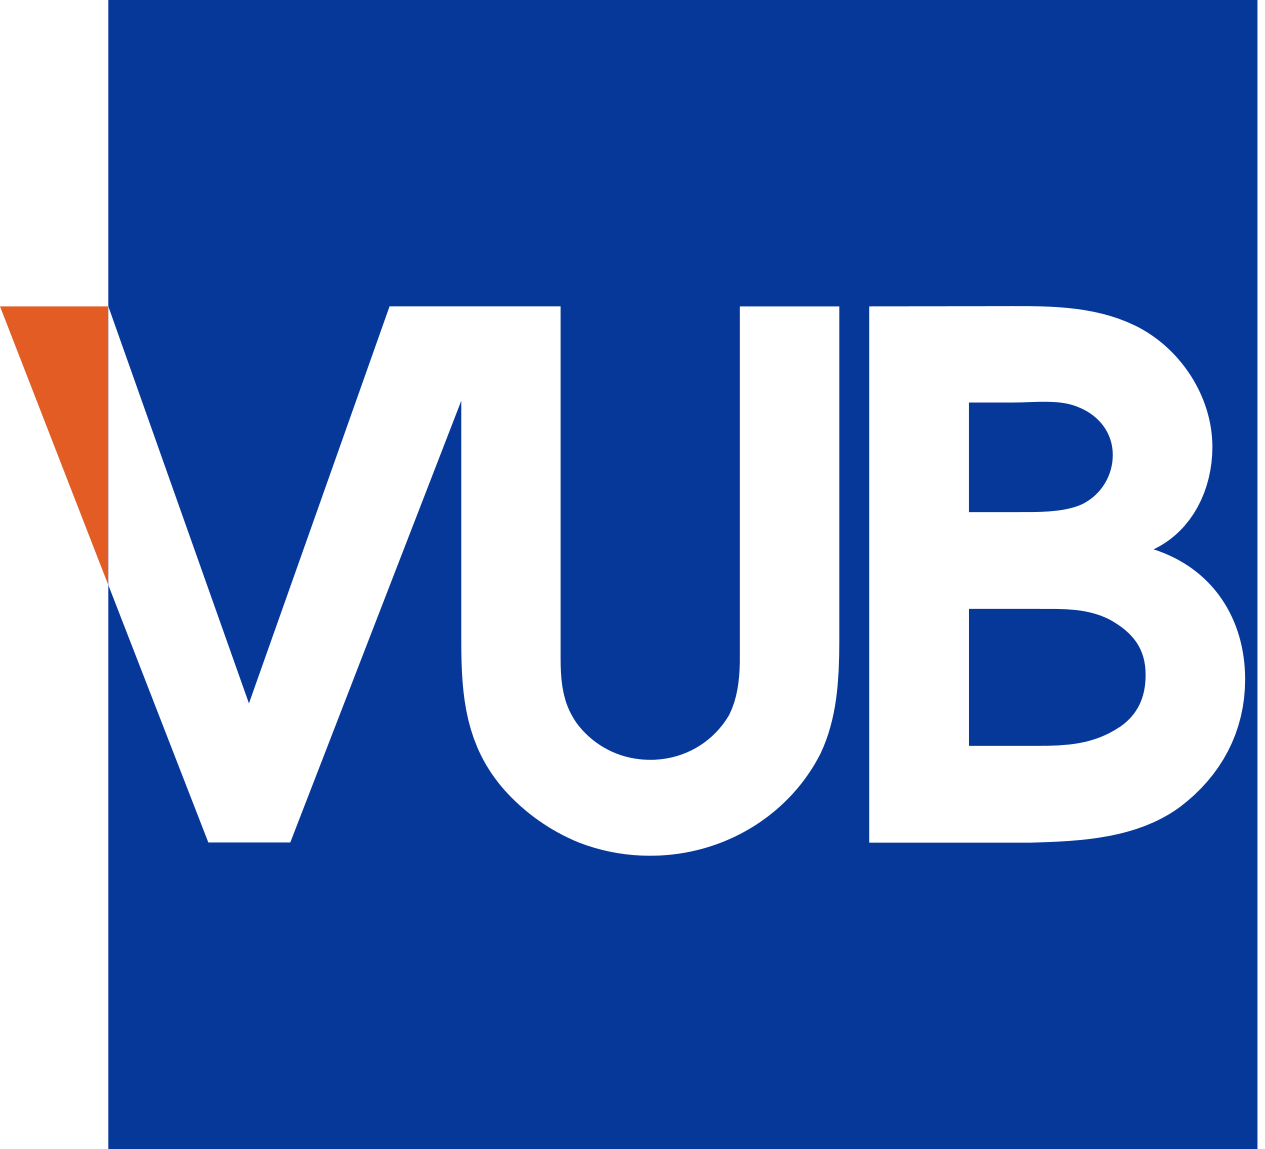 VUB logo